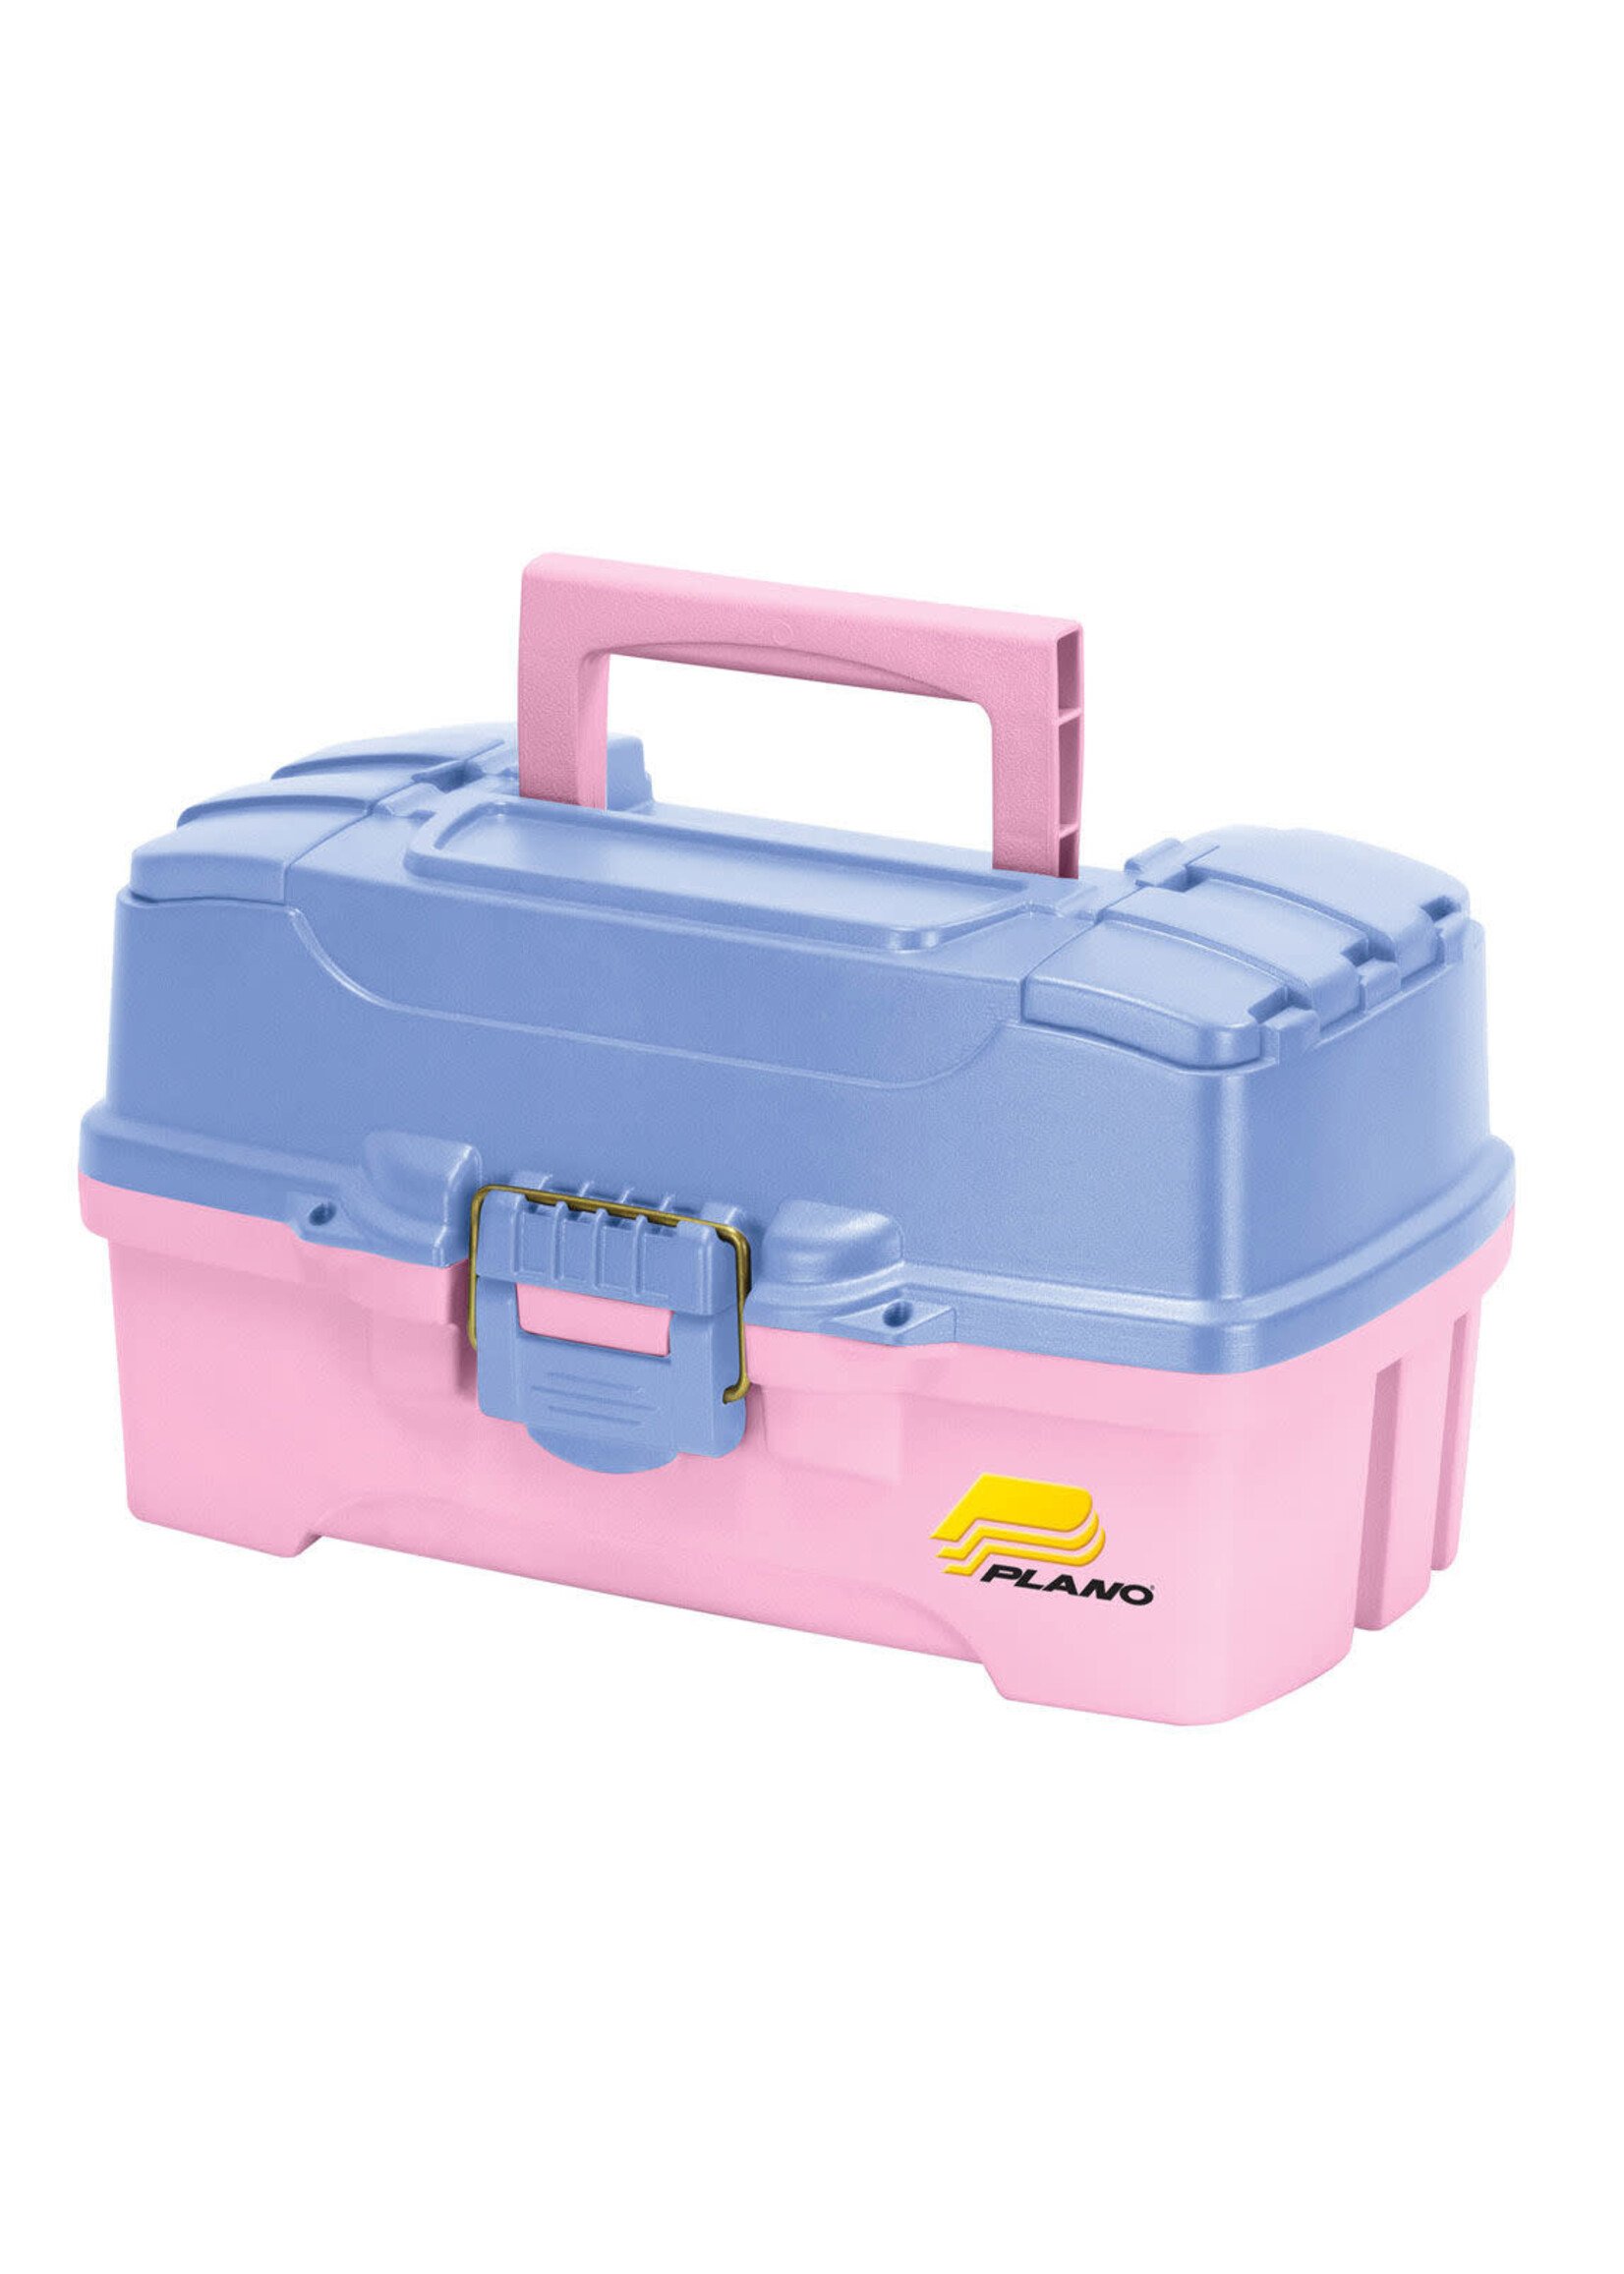 Plano 2 Tray Tackle Box - Pink - Tackle Shack